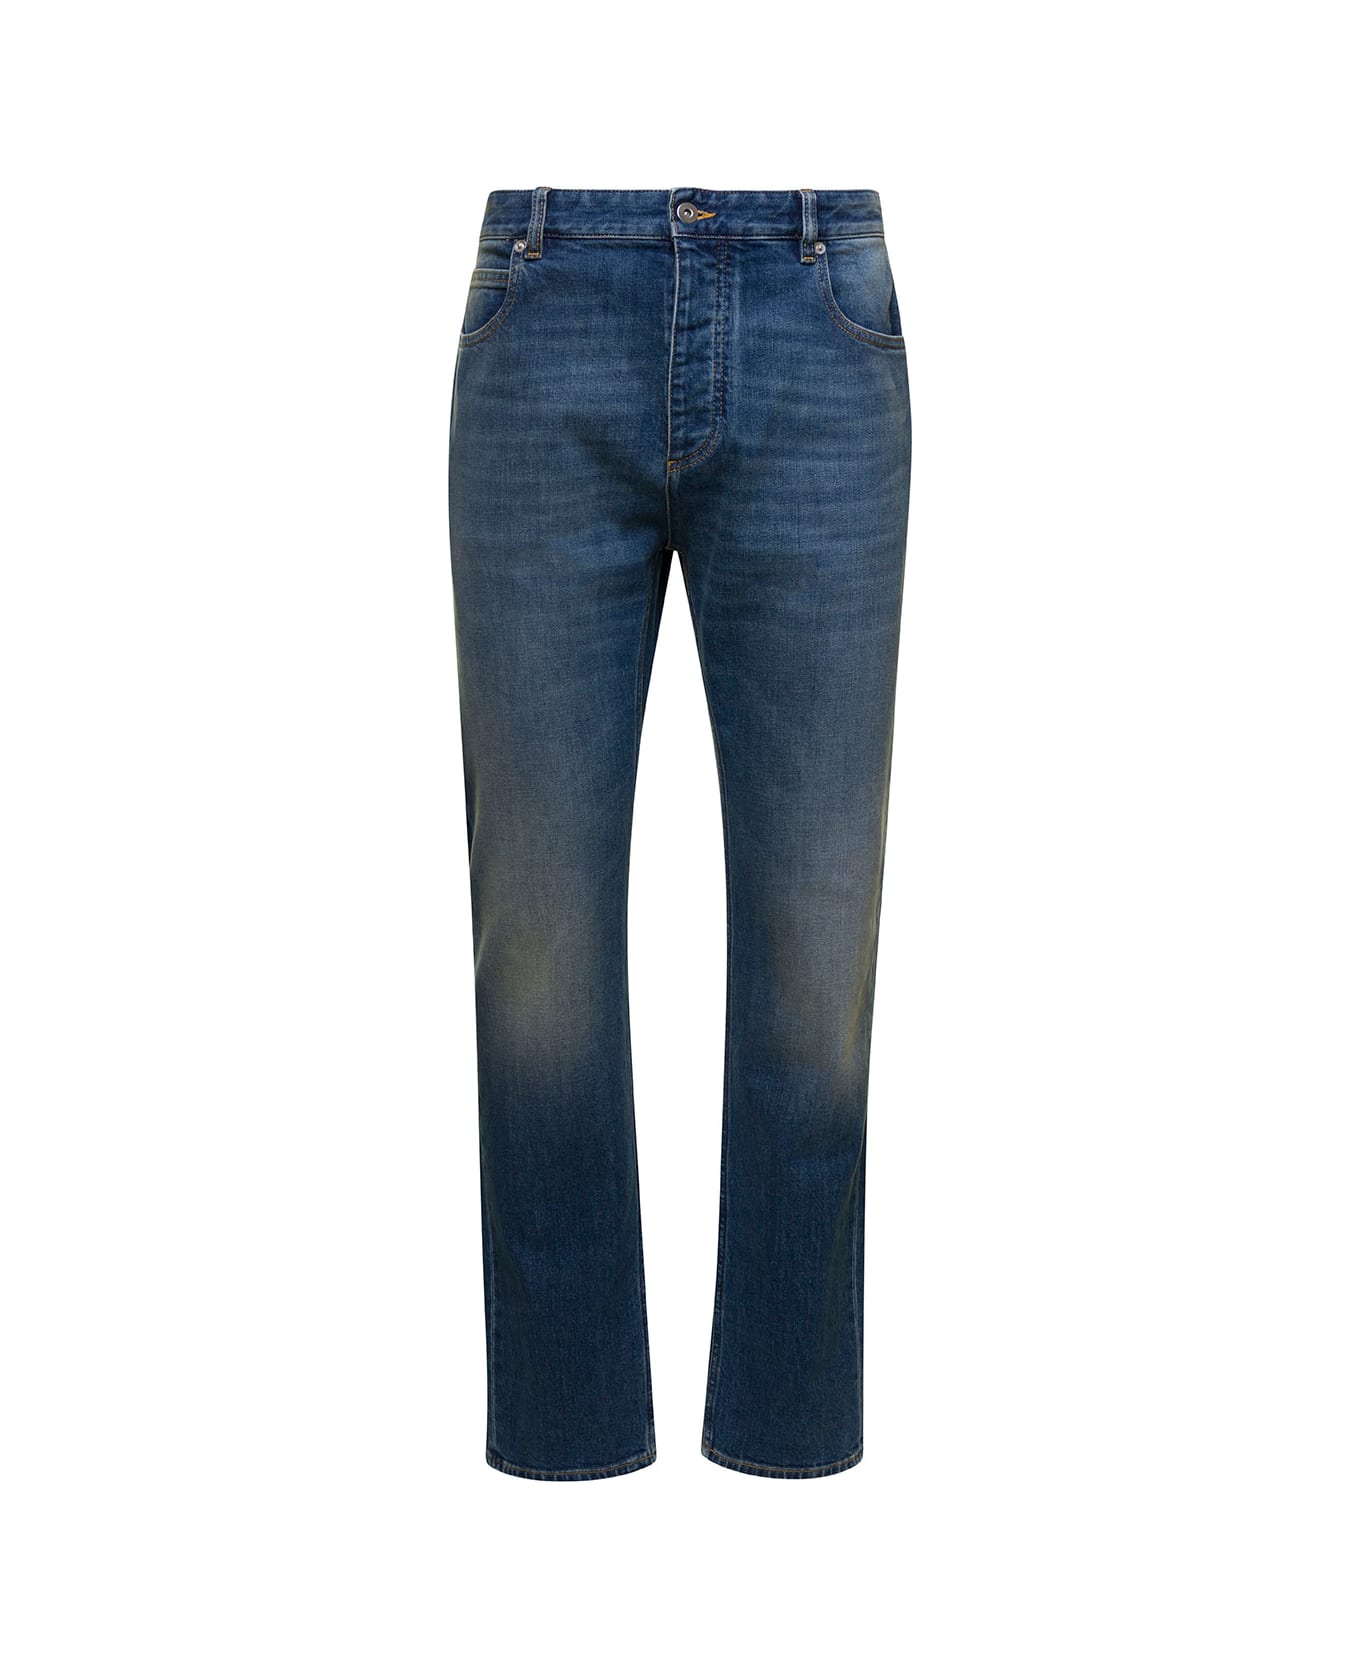 Bottega Veneta 5-pocket Style Fitted Jeans - Mid blue